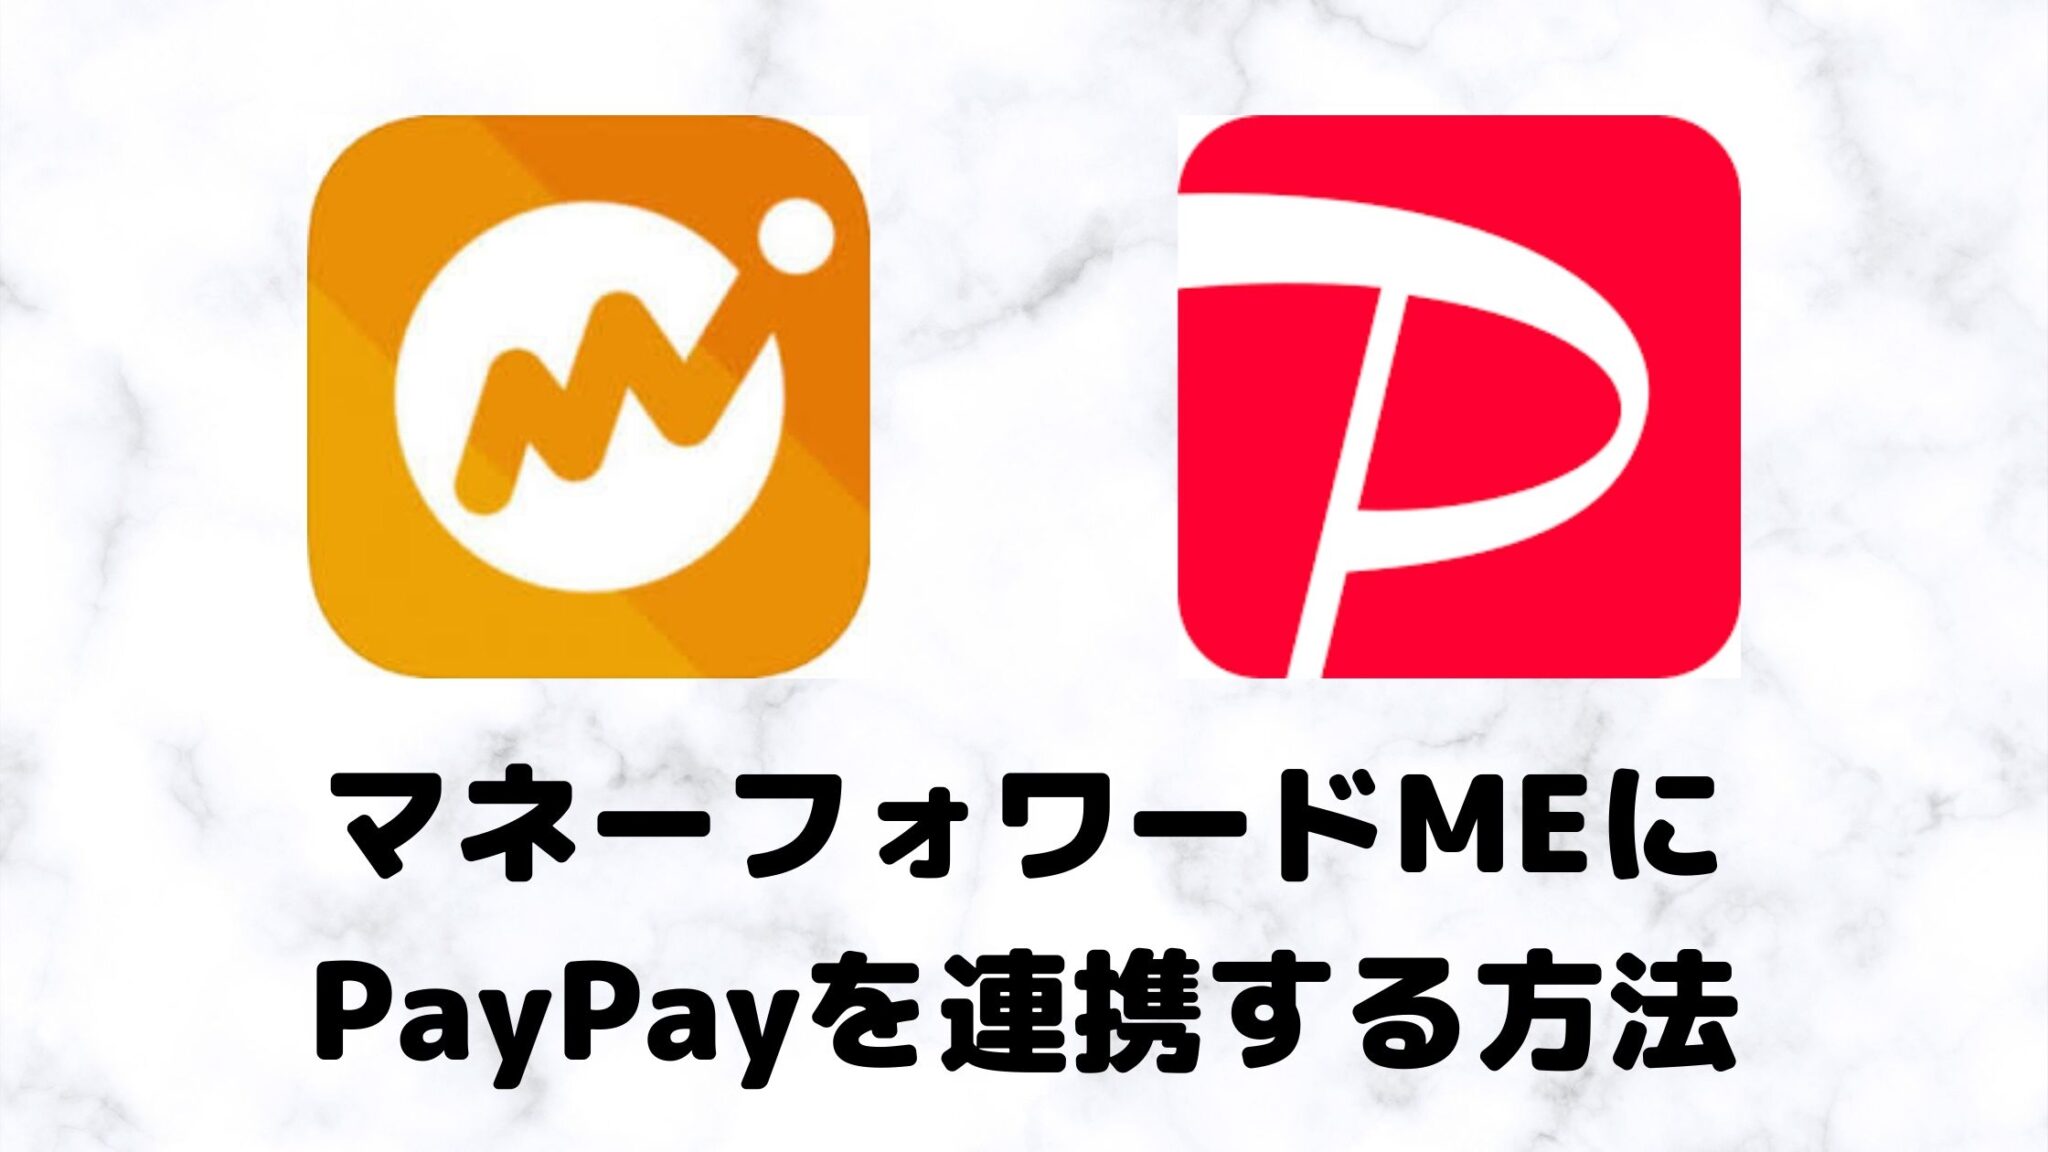 マネーフォワード・PayPay